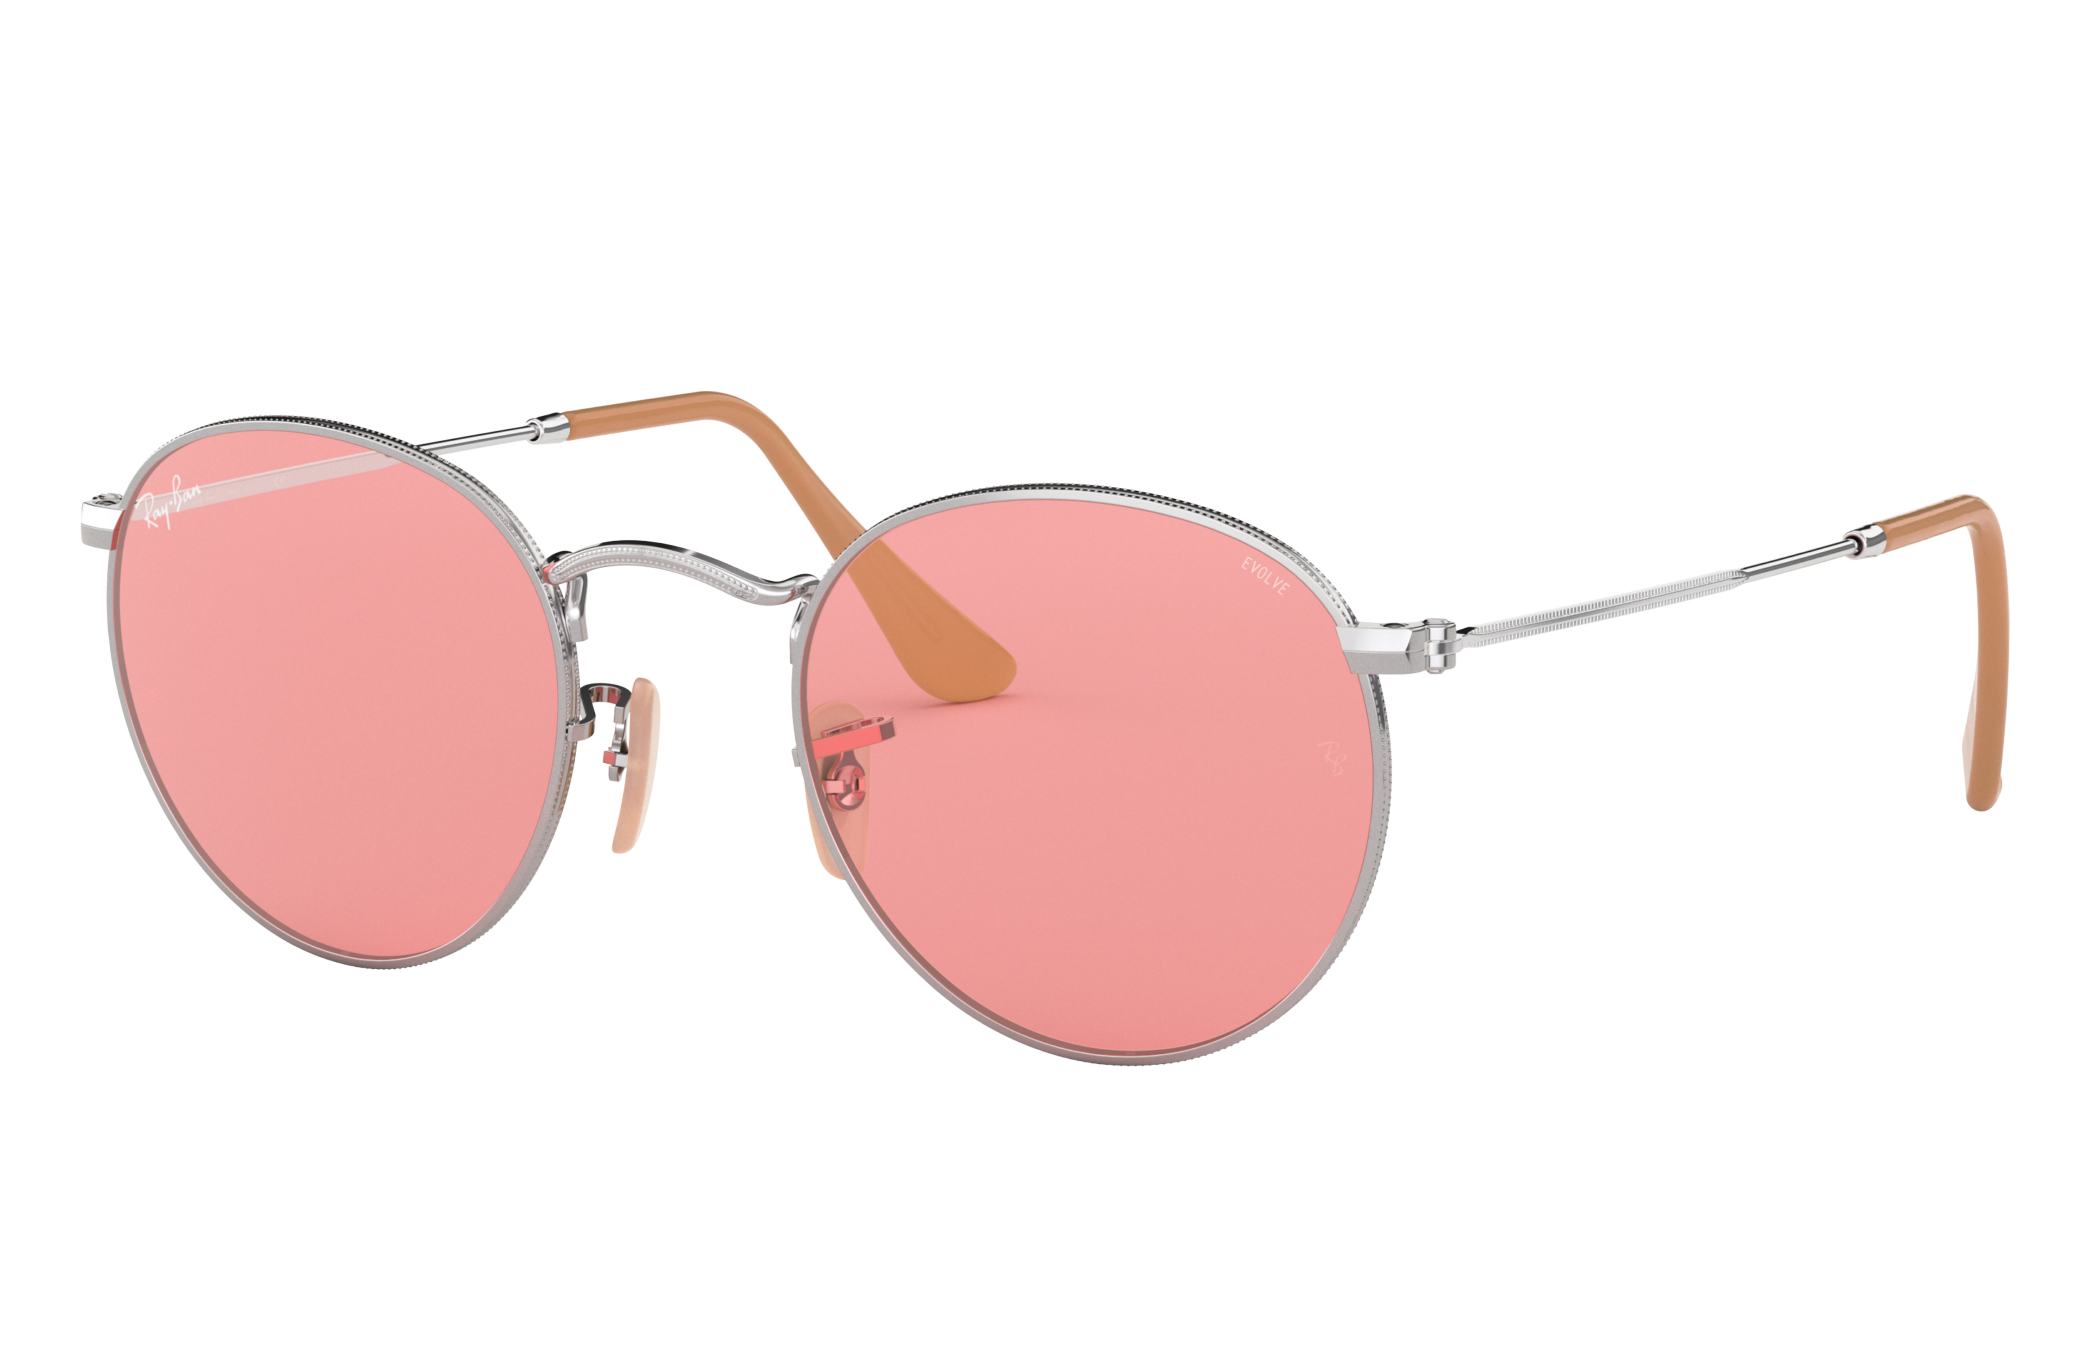 pink ray bans sunglasses